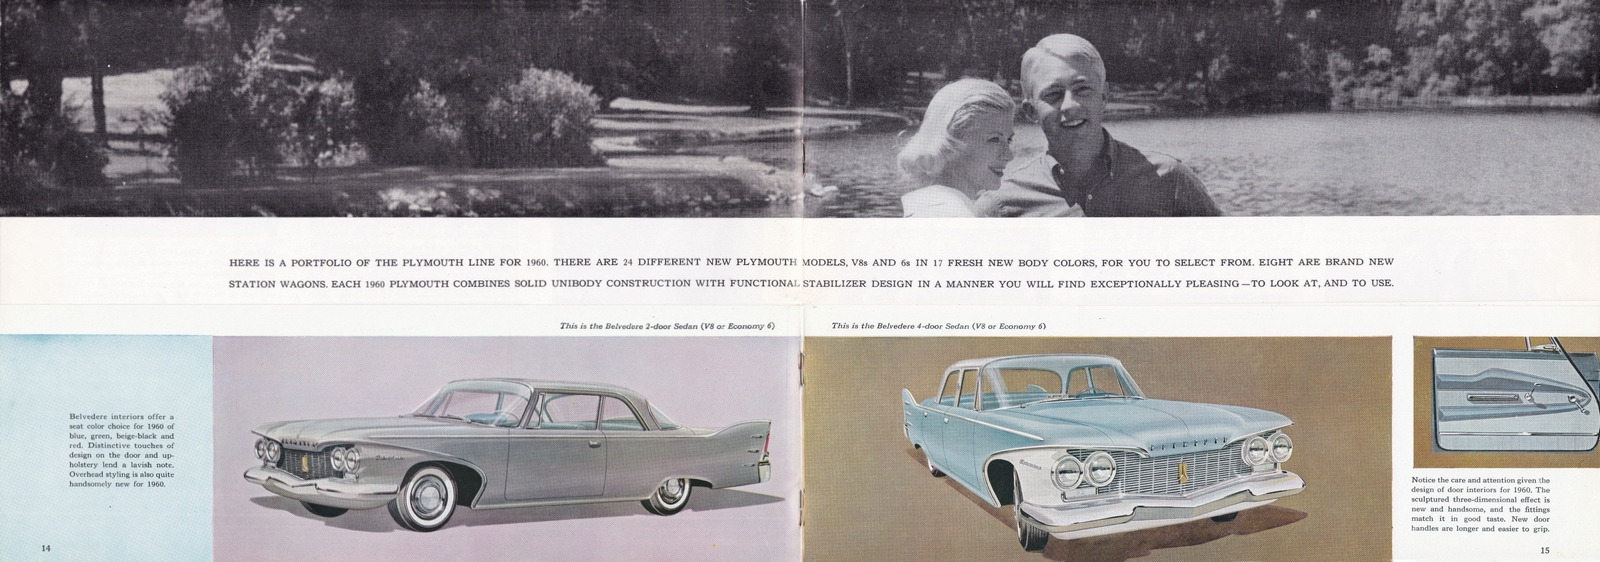 n_1960 Plymouth Prestige (Cdn)-14-15.jpg